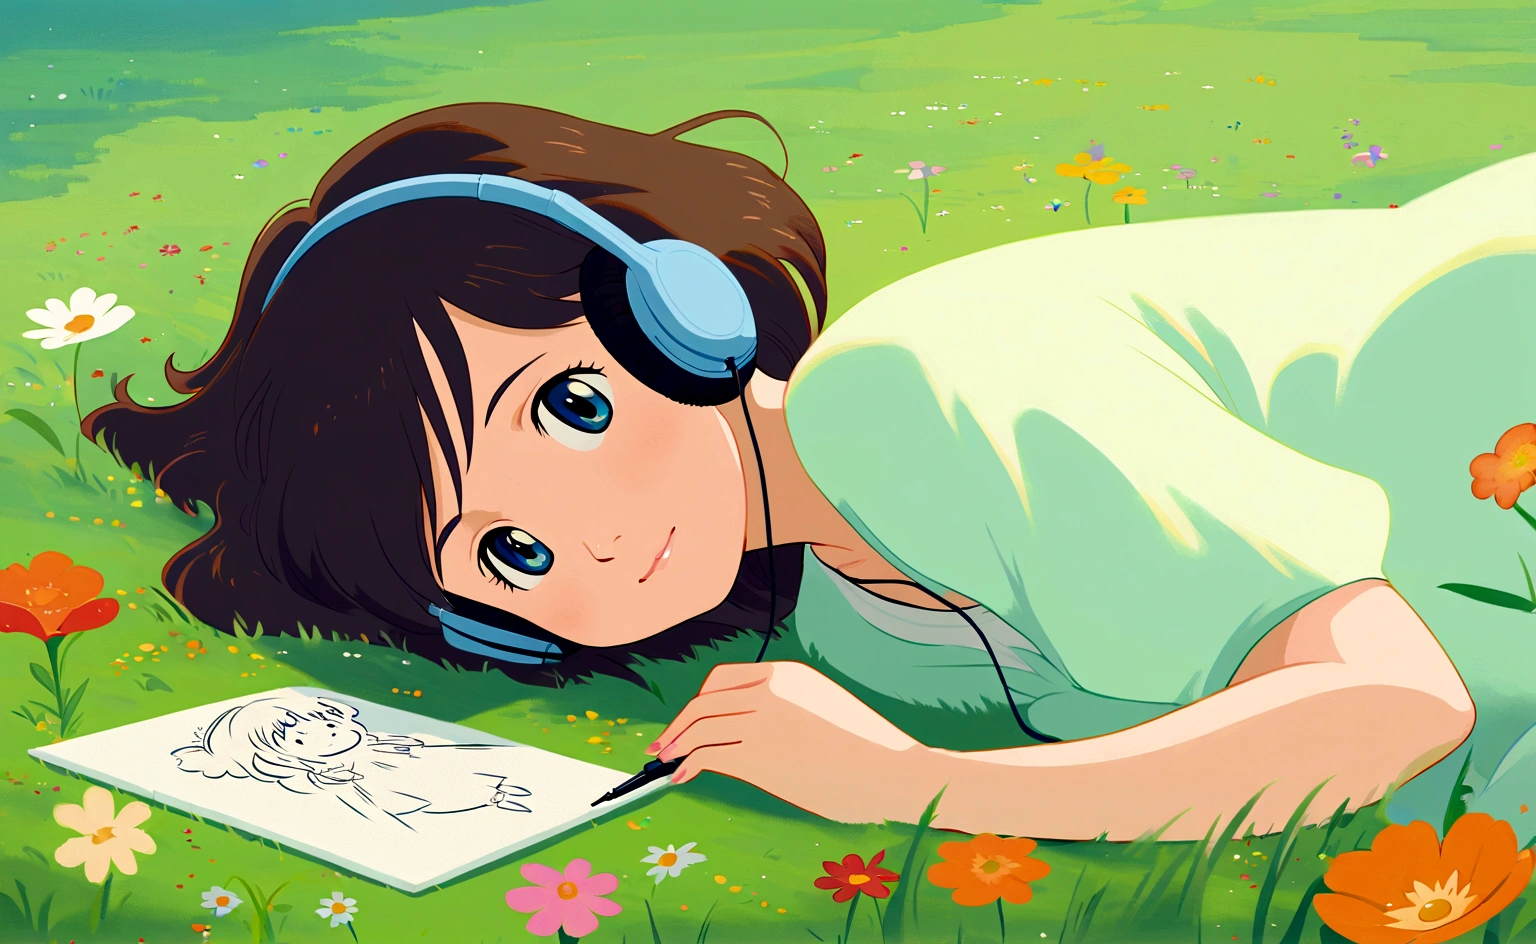 милая девушка лежит на траве на лугу, полном красивых цветов, простой, рисунок, слушать музыку, Стиль студии Гибли., трава качается в сторону, Гибли studio inspired, причудливый, воздушный, спокойствие, безмятежный, Холод, Гибли, аниме, неземной